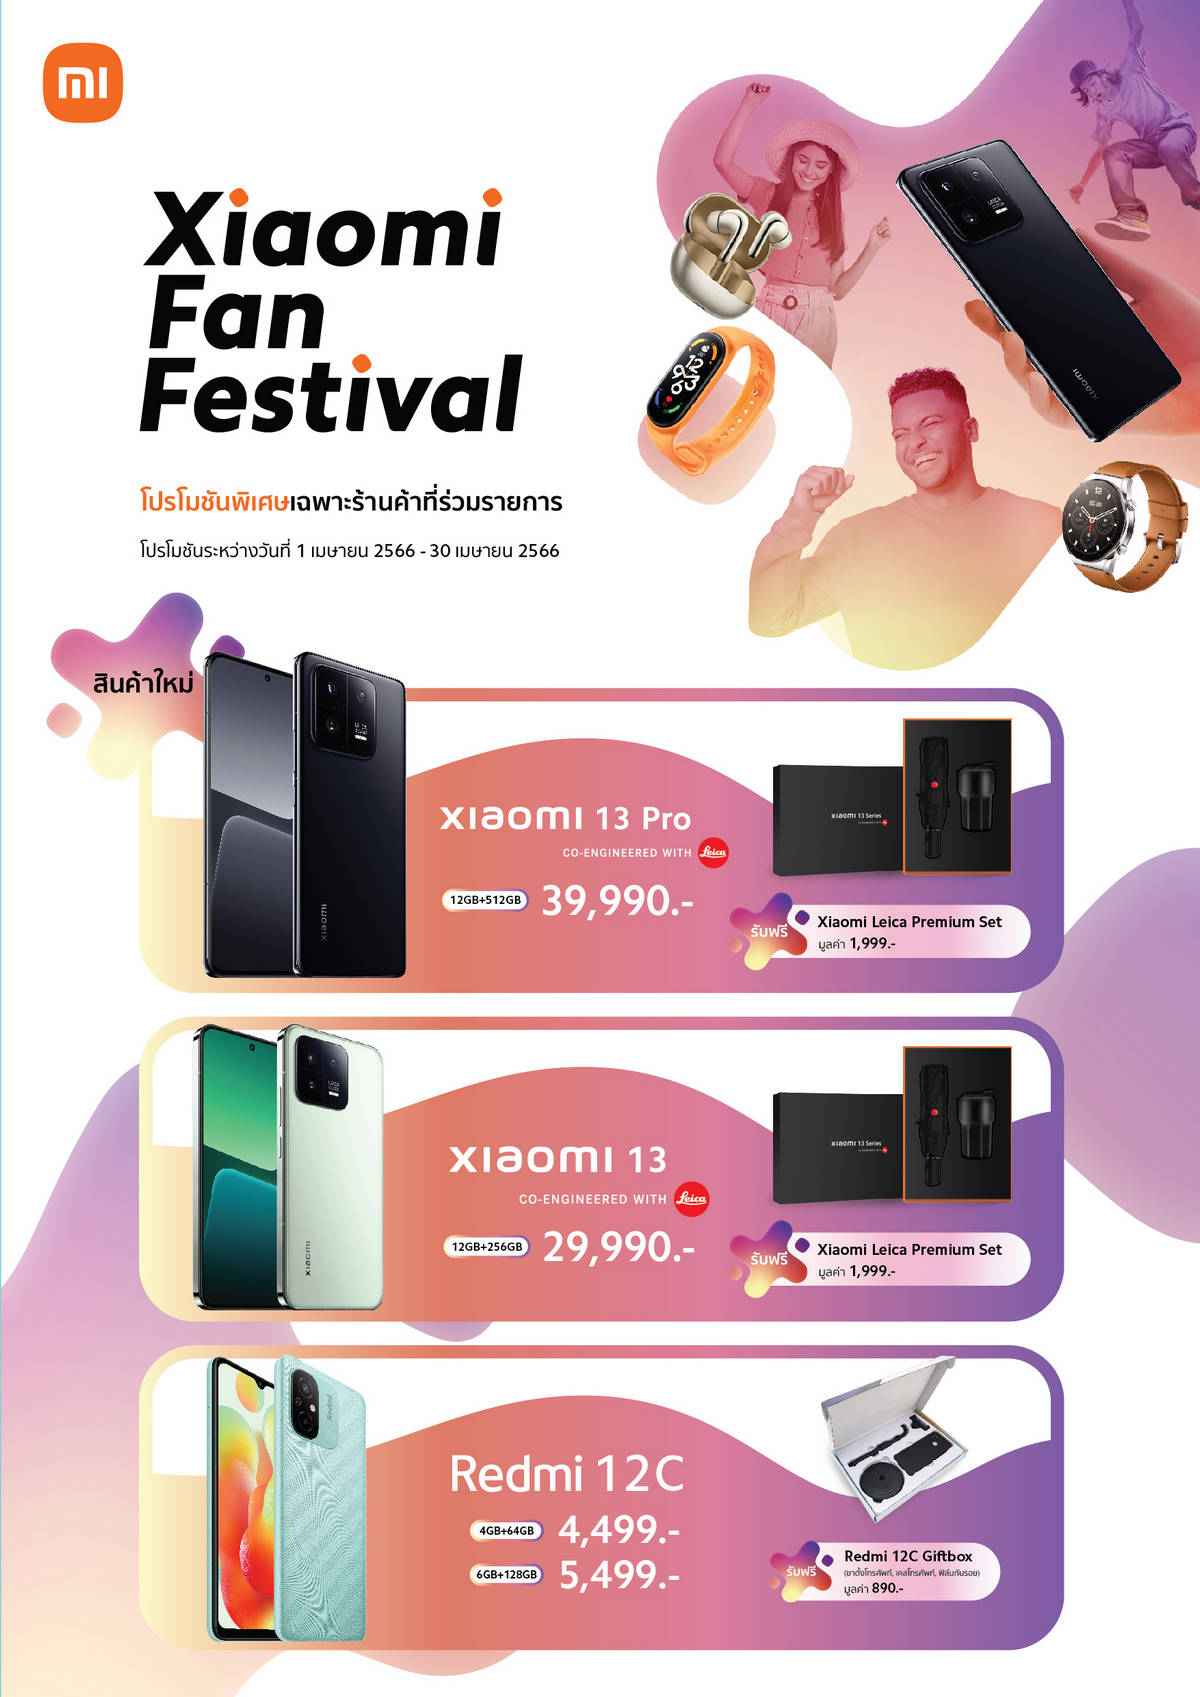 เสียวหมี่ จัดแคมเปญ Xiaomi Fan Festival มอบโปรโมชันพิเศษระหว่างวันที่ 1-30 เมษายน 2566